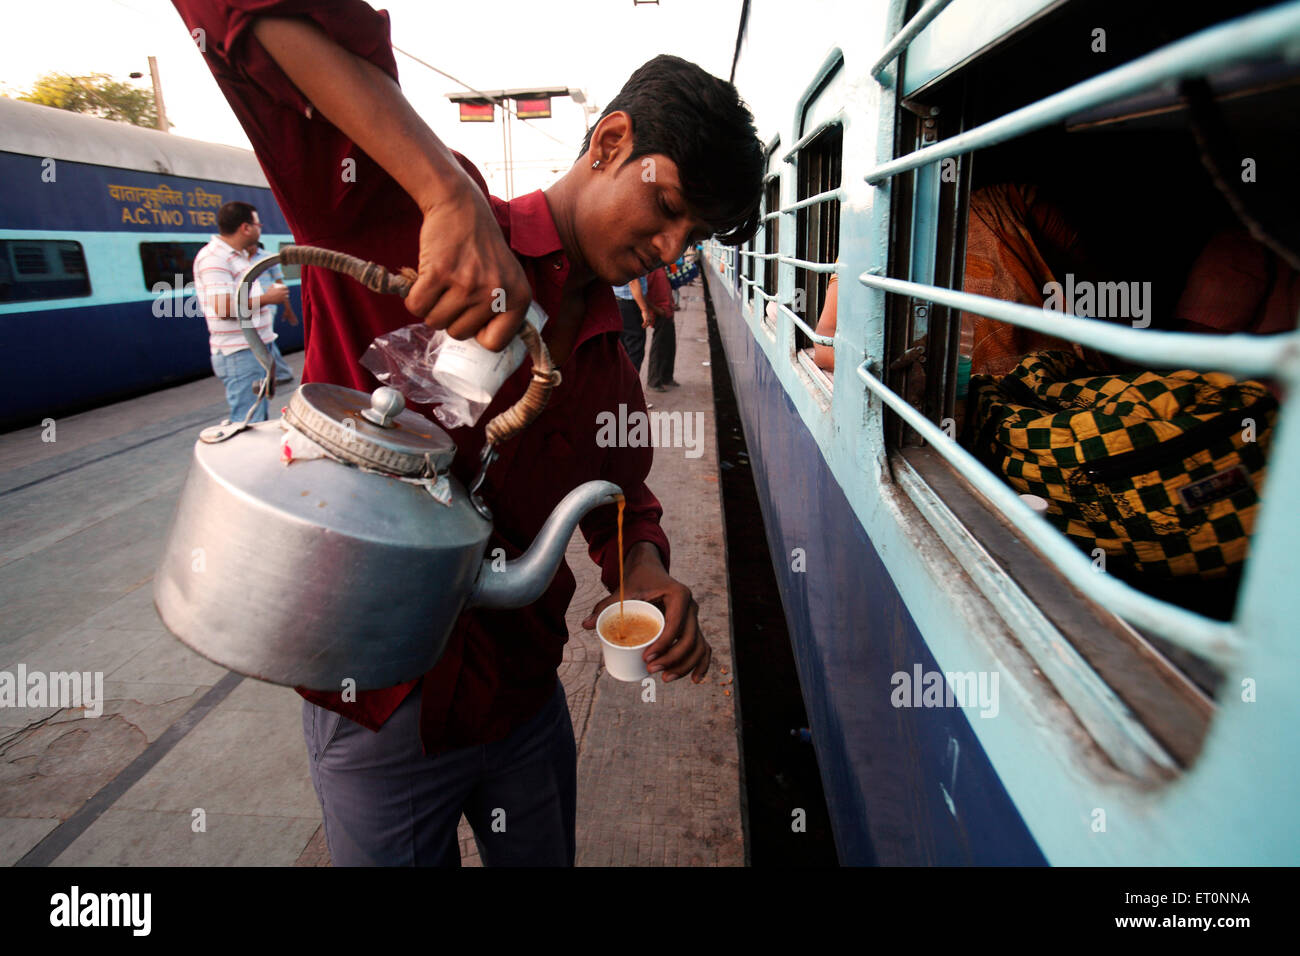 Indische Eisenbahn Tee Verkäufer Tee Verkäufer Gießen Tee aus Aluminium-Wasserkocher in Kunststoff-Tasse für Passagiere im Zug am Bahnhof in Indien Asien Stockfoto